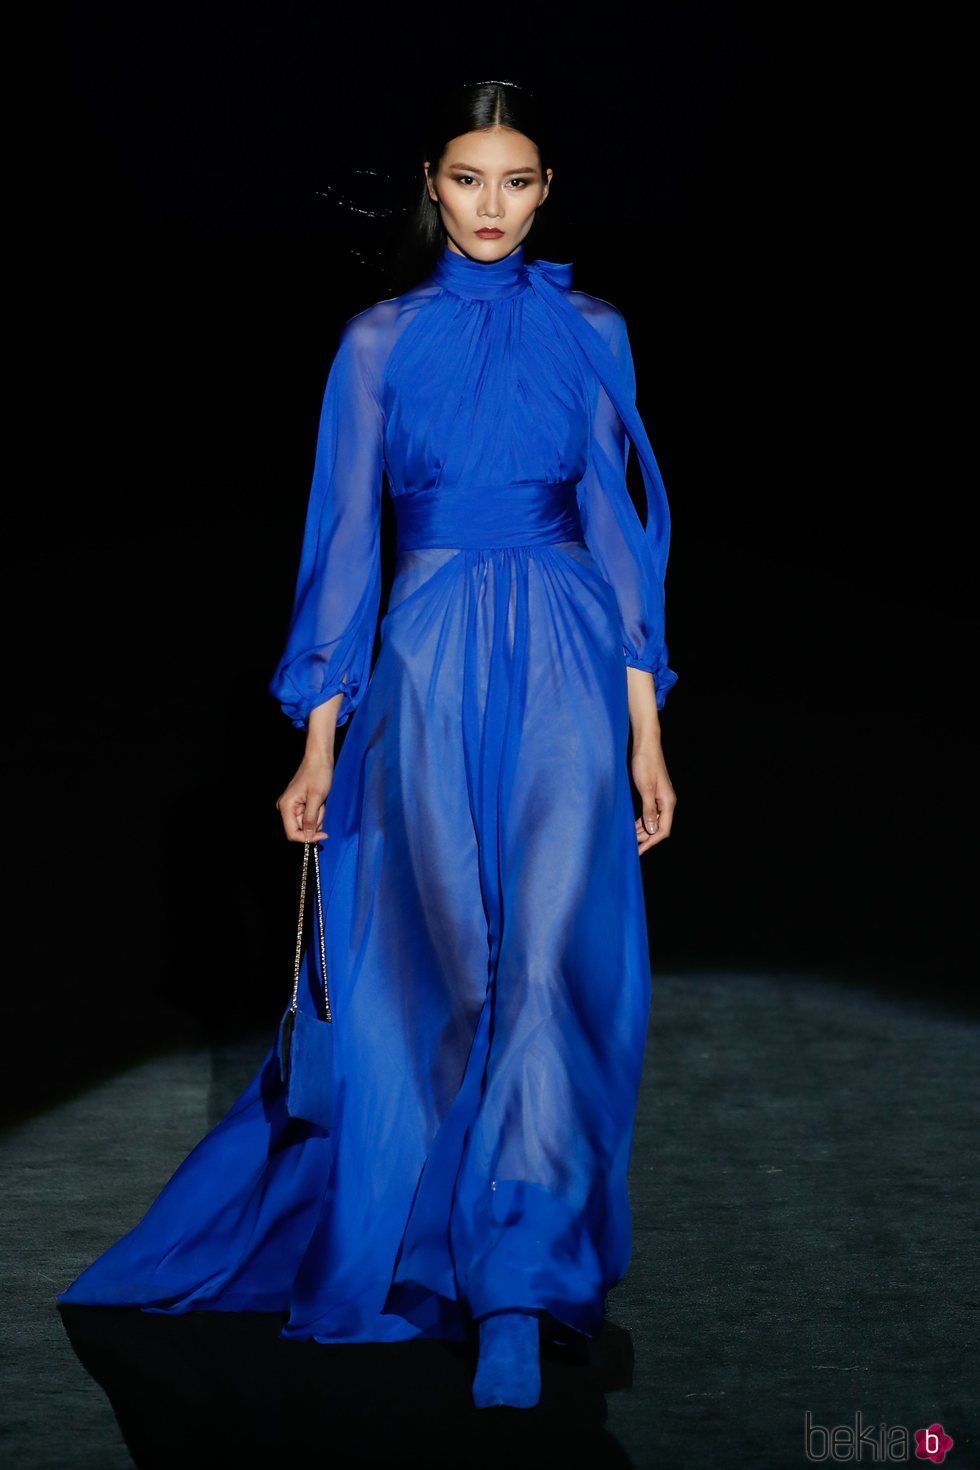 Vestido azul eléctrico en el desfile otoño/invierno 2020-2021 de Hannibal Laguna